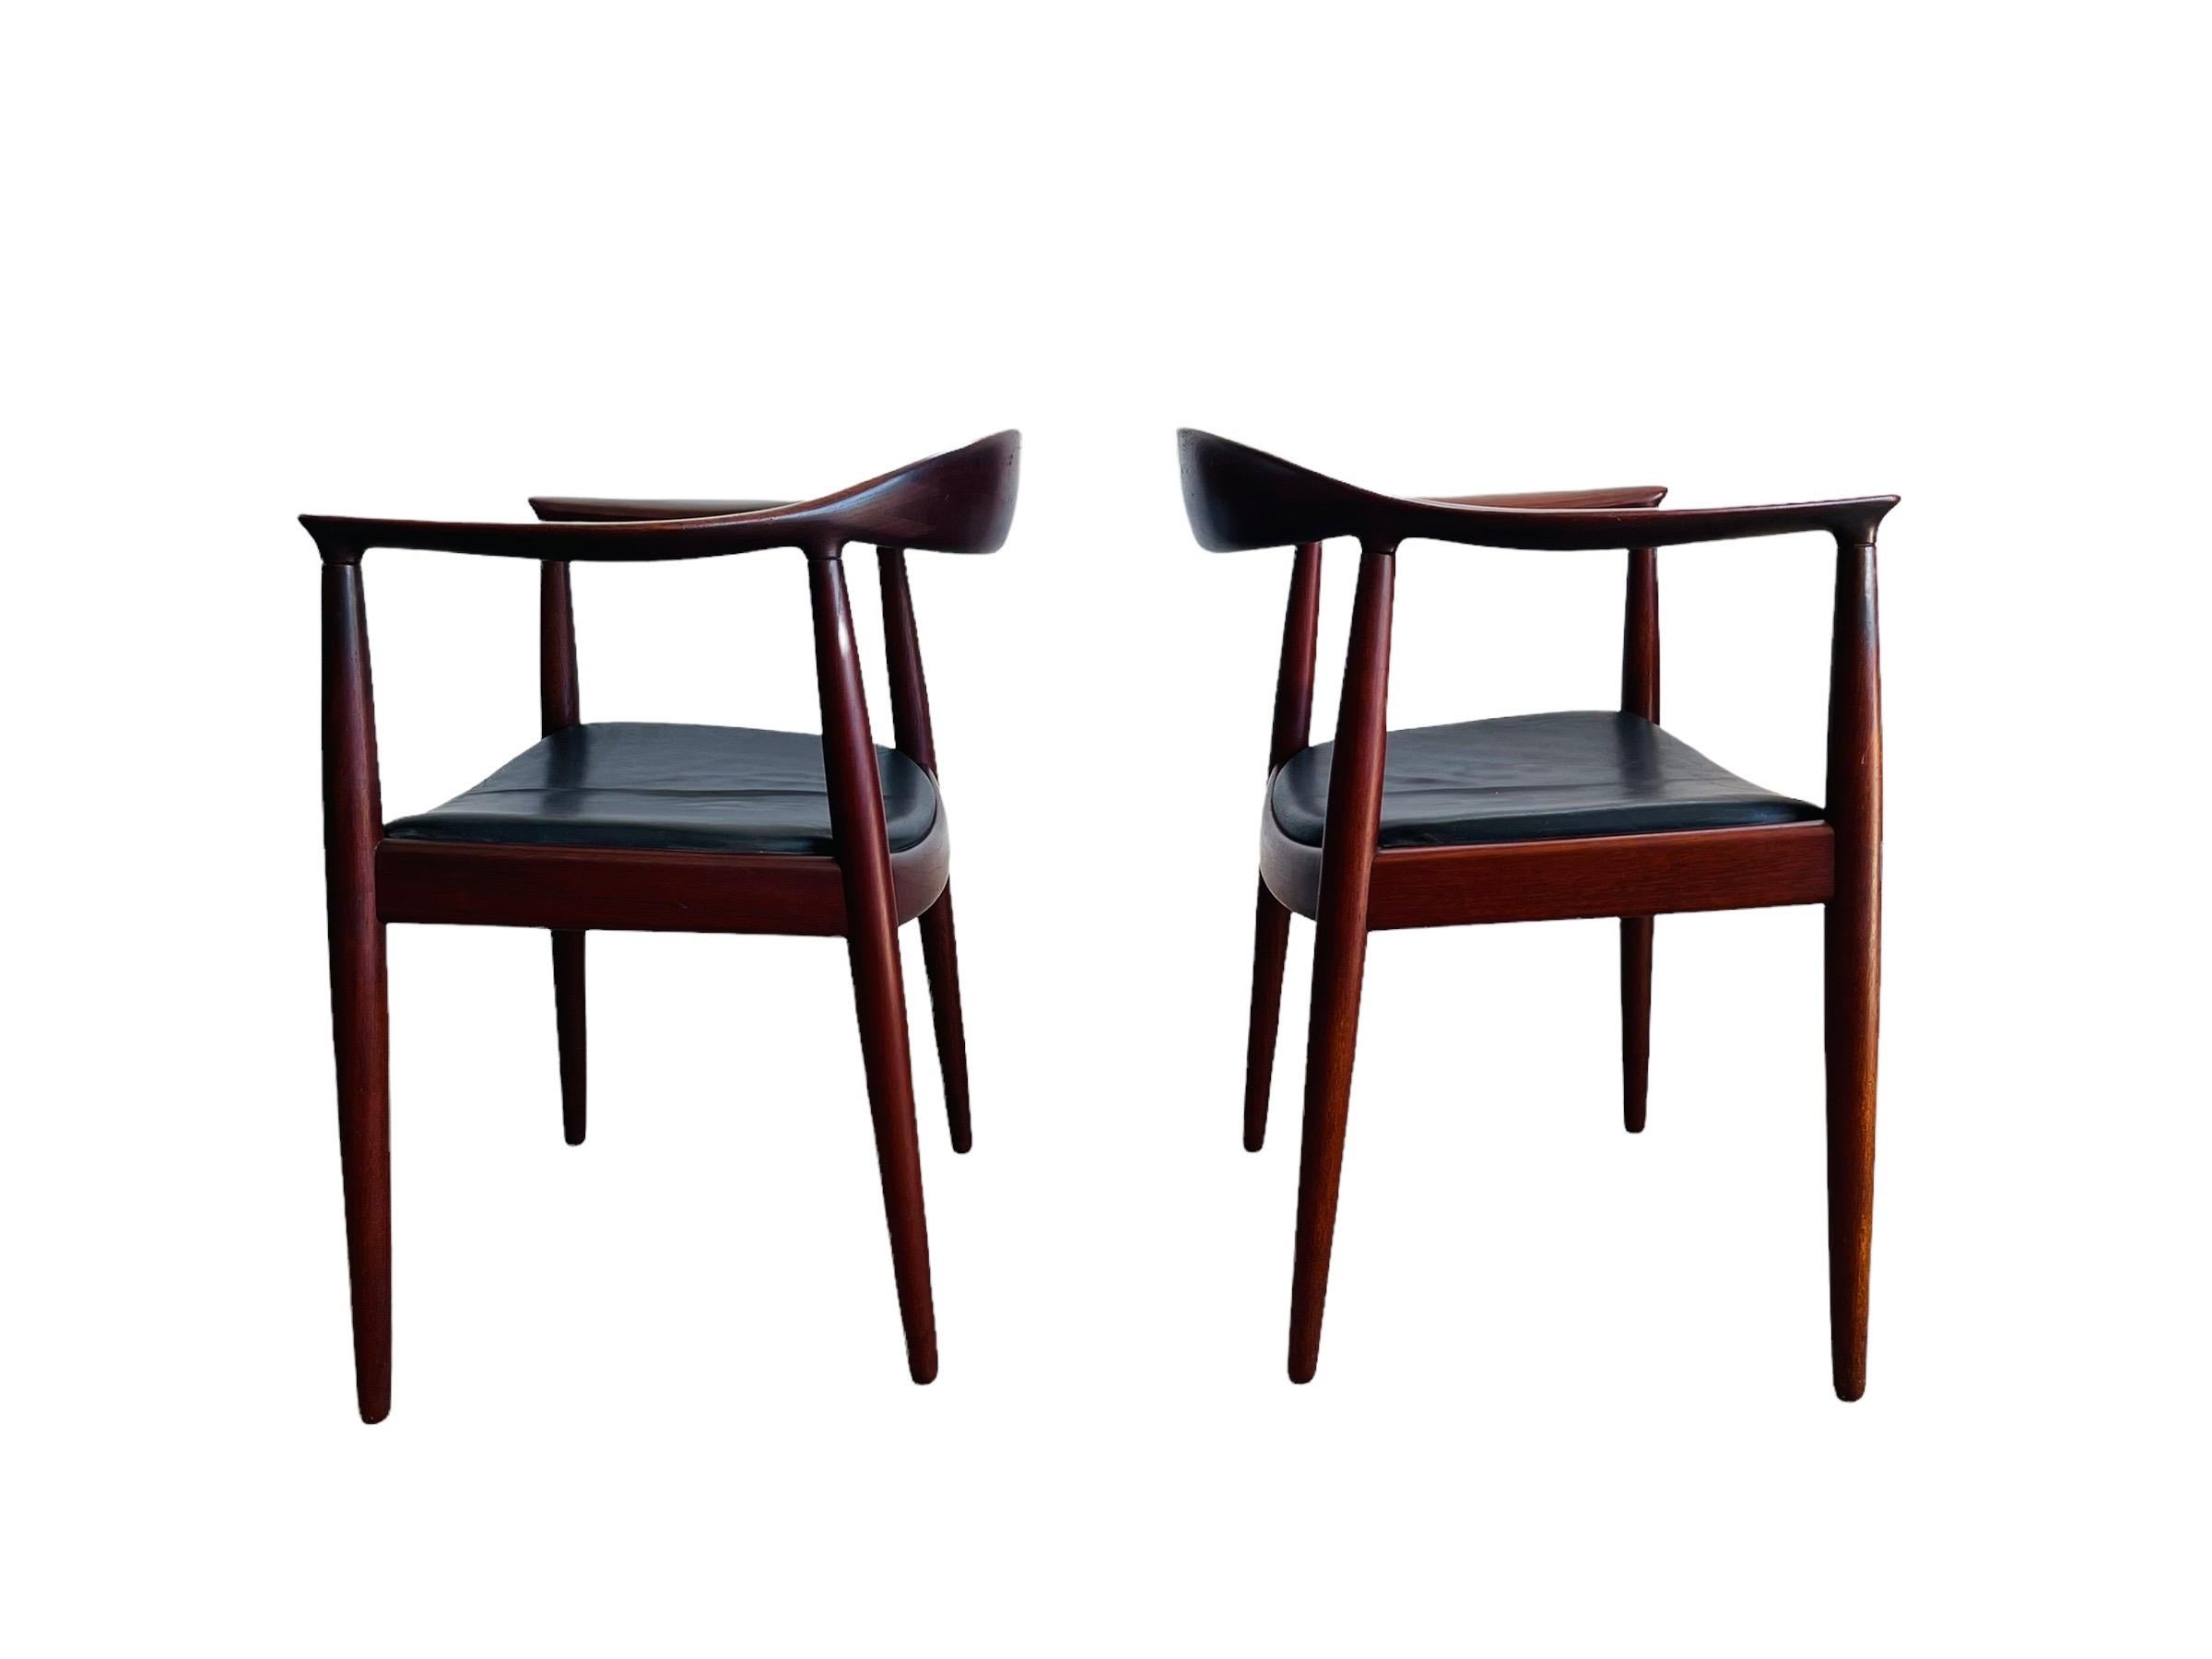 Atemberaubendes, seltenes Paar moderner dänischer Teakholzstühle, entworfen von Hans J. Wegner für Johannes Hansen um 1954. Die Stühle sind mit schwarzem Originalleder auf Teakholzrahmen gepolstert. 